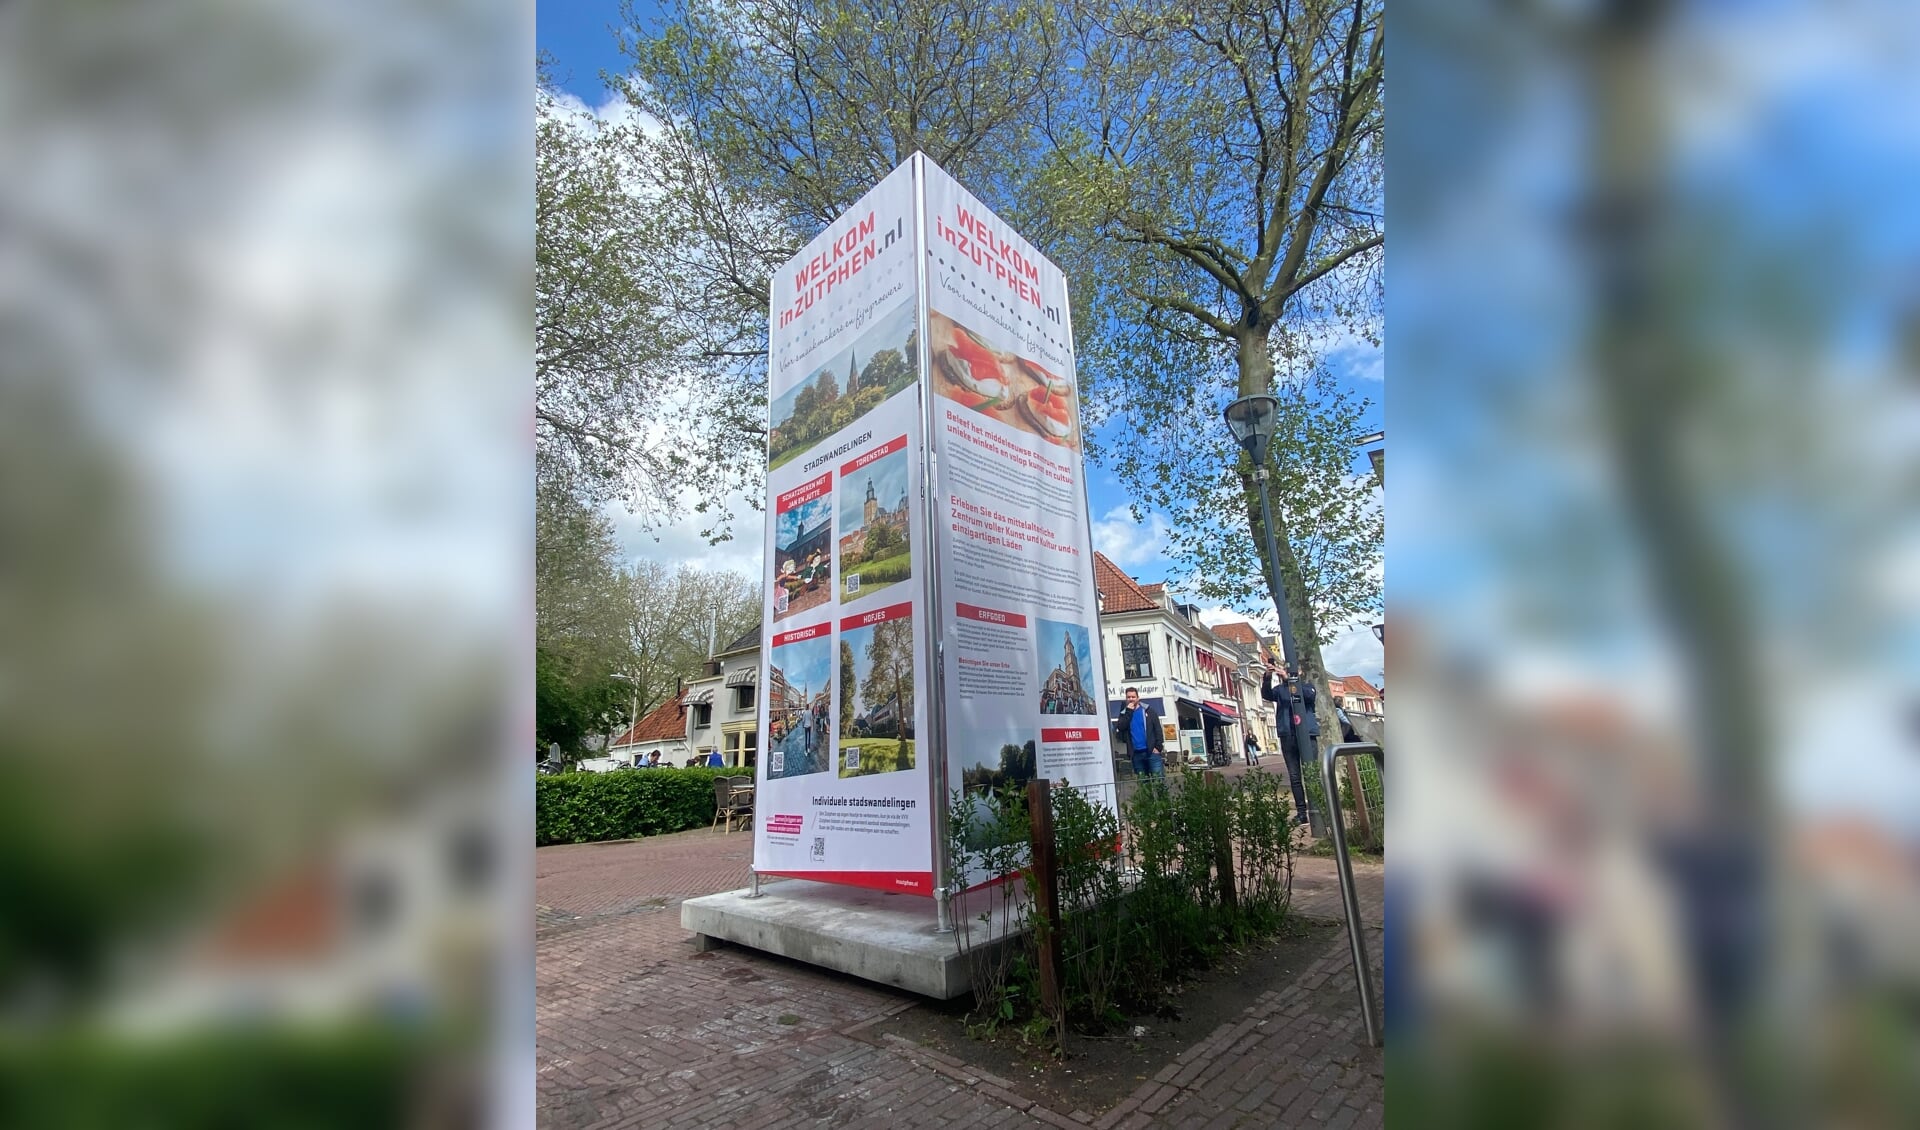 Op zes locaties in het centrum van Zutphen treft men deze nieuwe pilaren met informatie aan. Foto: InZutphen